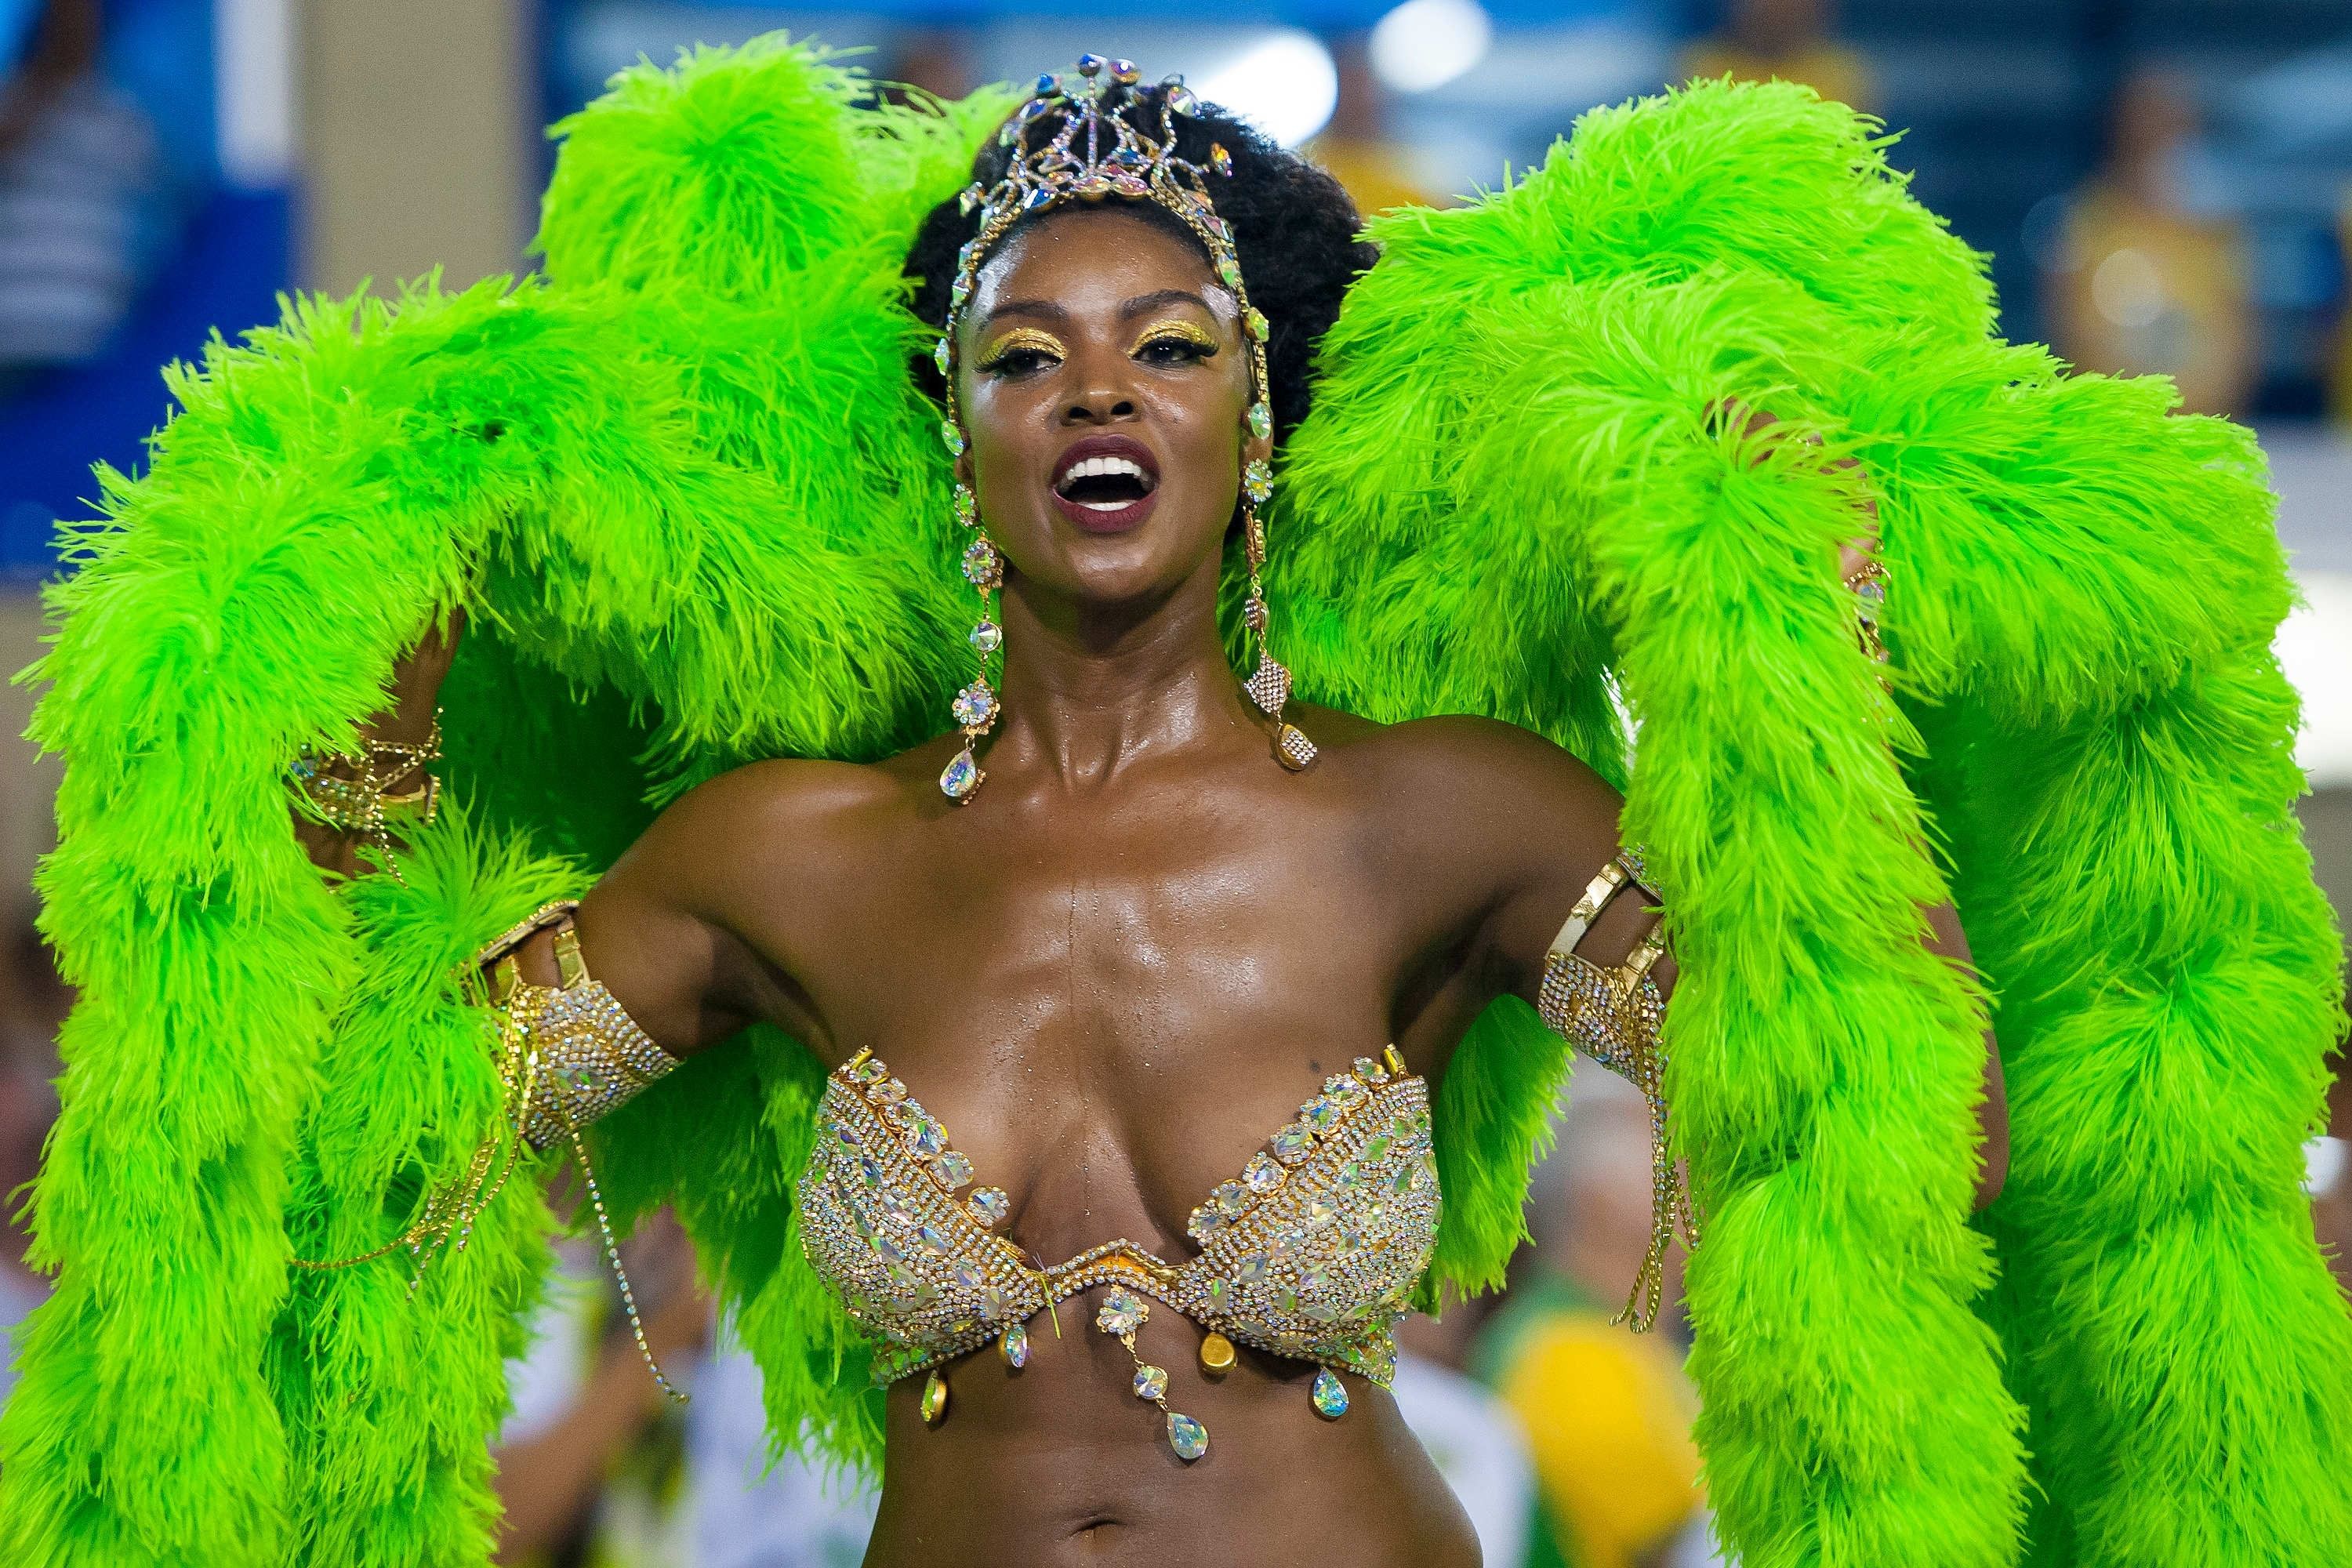 Black Shemale Brazilian Carnival - Black girls at rio carnival - Quality porn